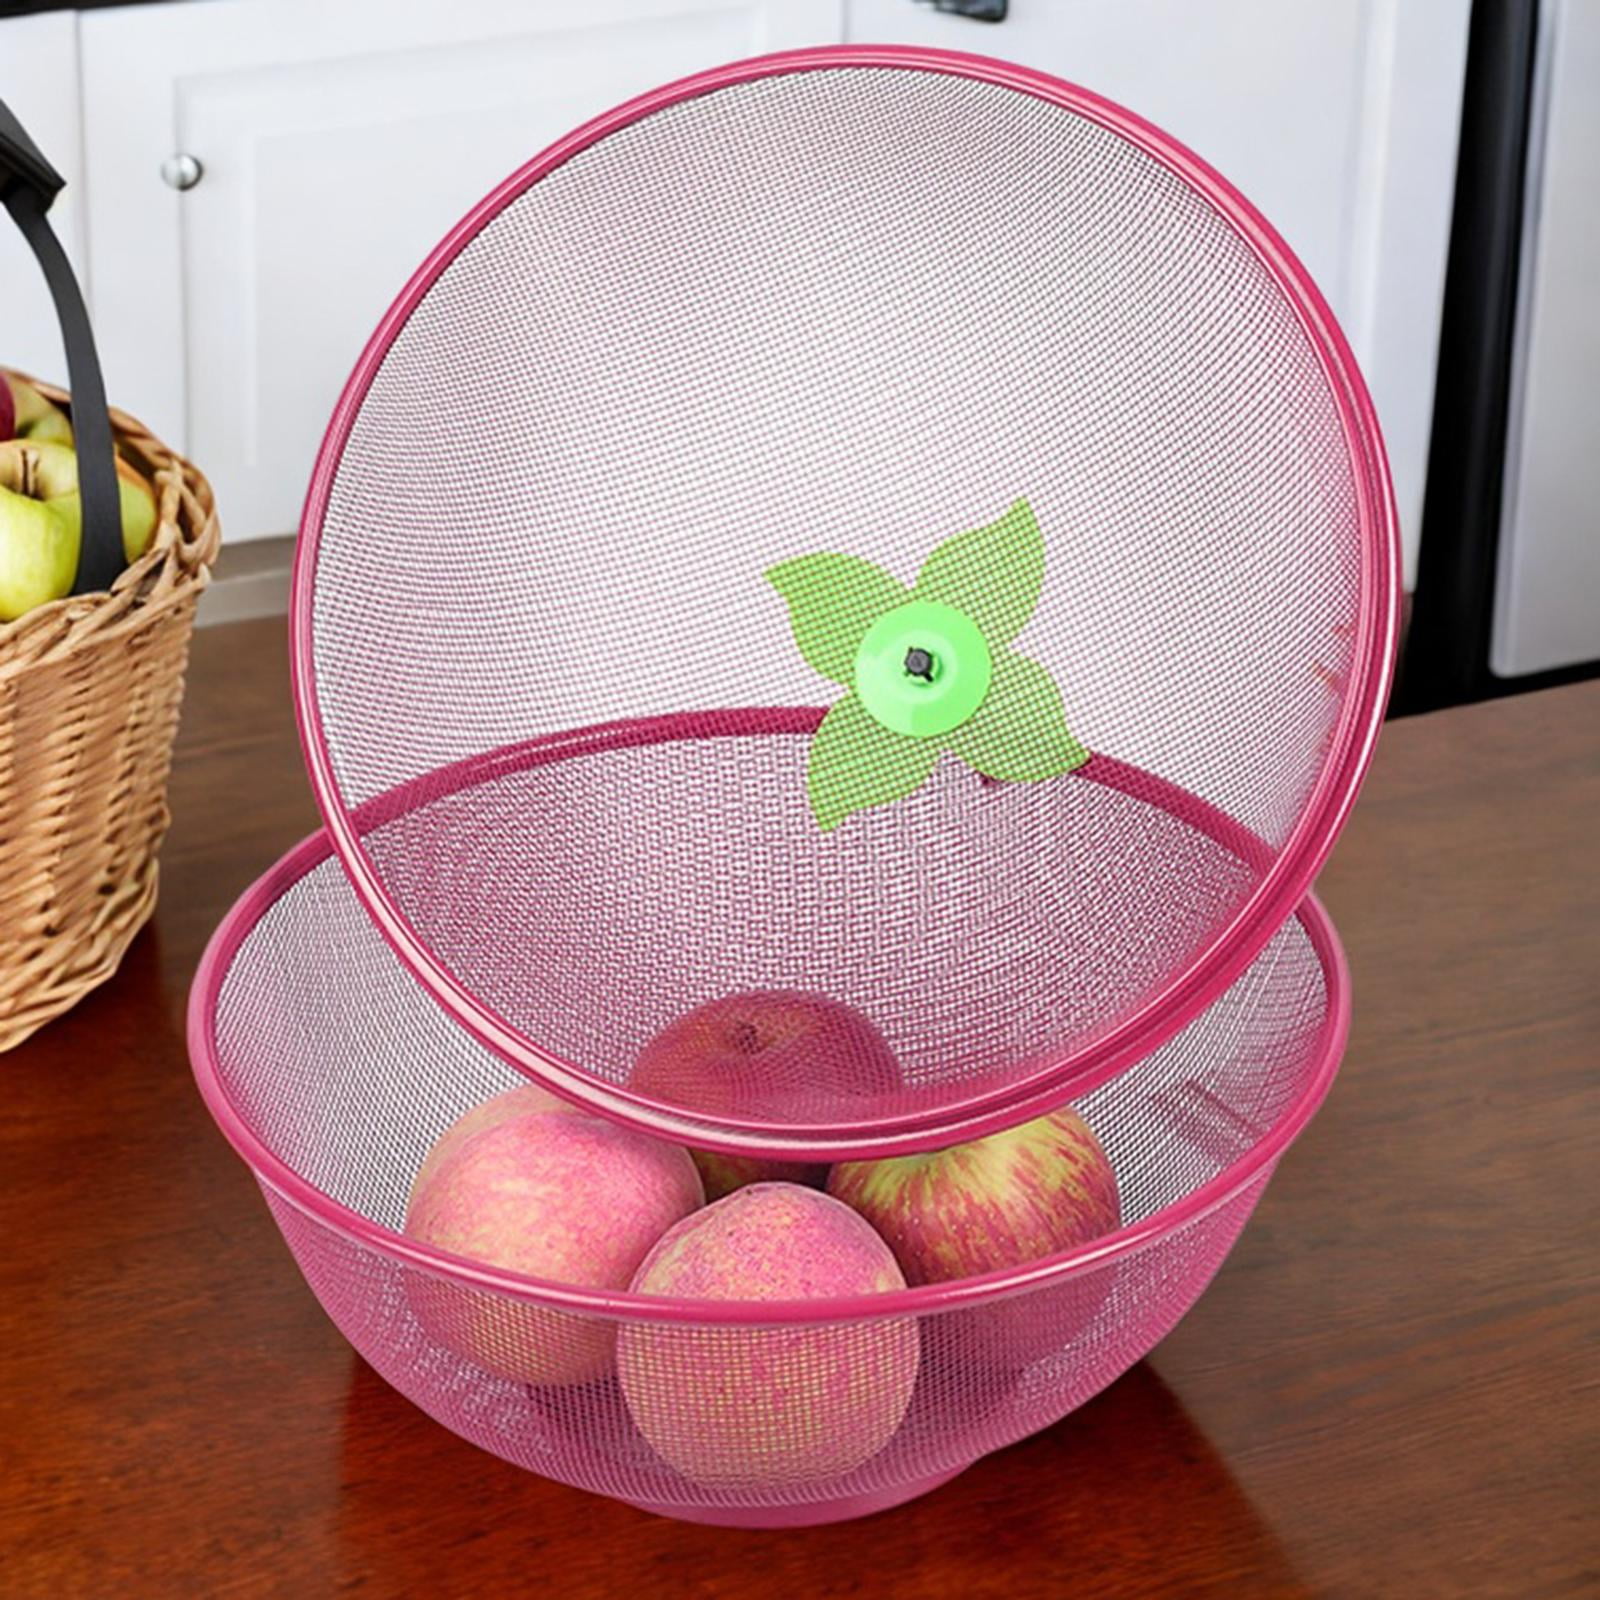  Fruit Basket With Lid - Decorative Fruit Bowl Metal Wire Basket  Covered Fruit Bowl Strainer For Fruits Vegetables Fruit Display Stand Keeps  Flies Out Φ10.7 (2 Fruit Baskets+2 Lids) (black) 